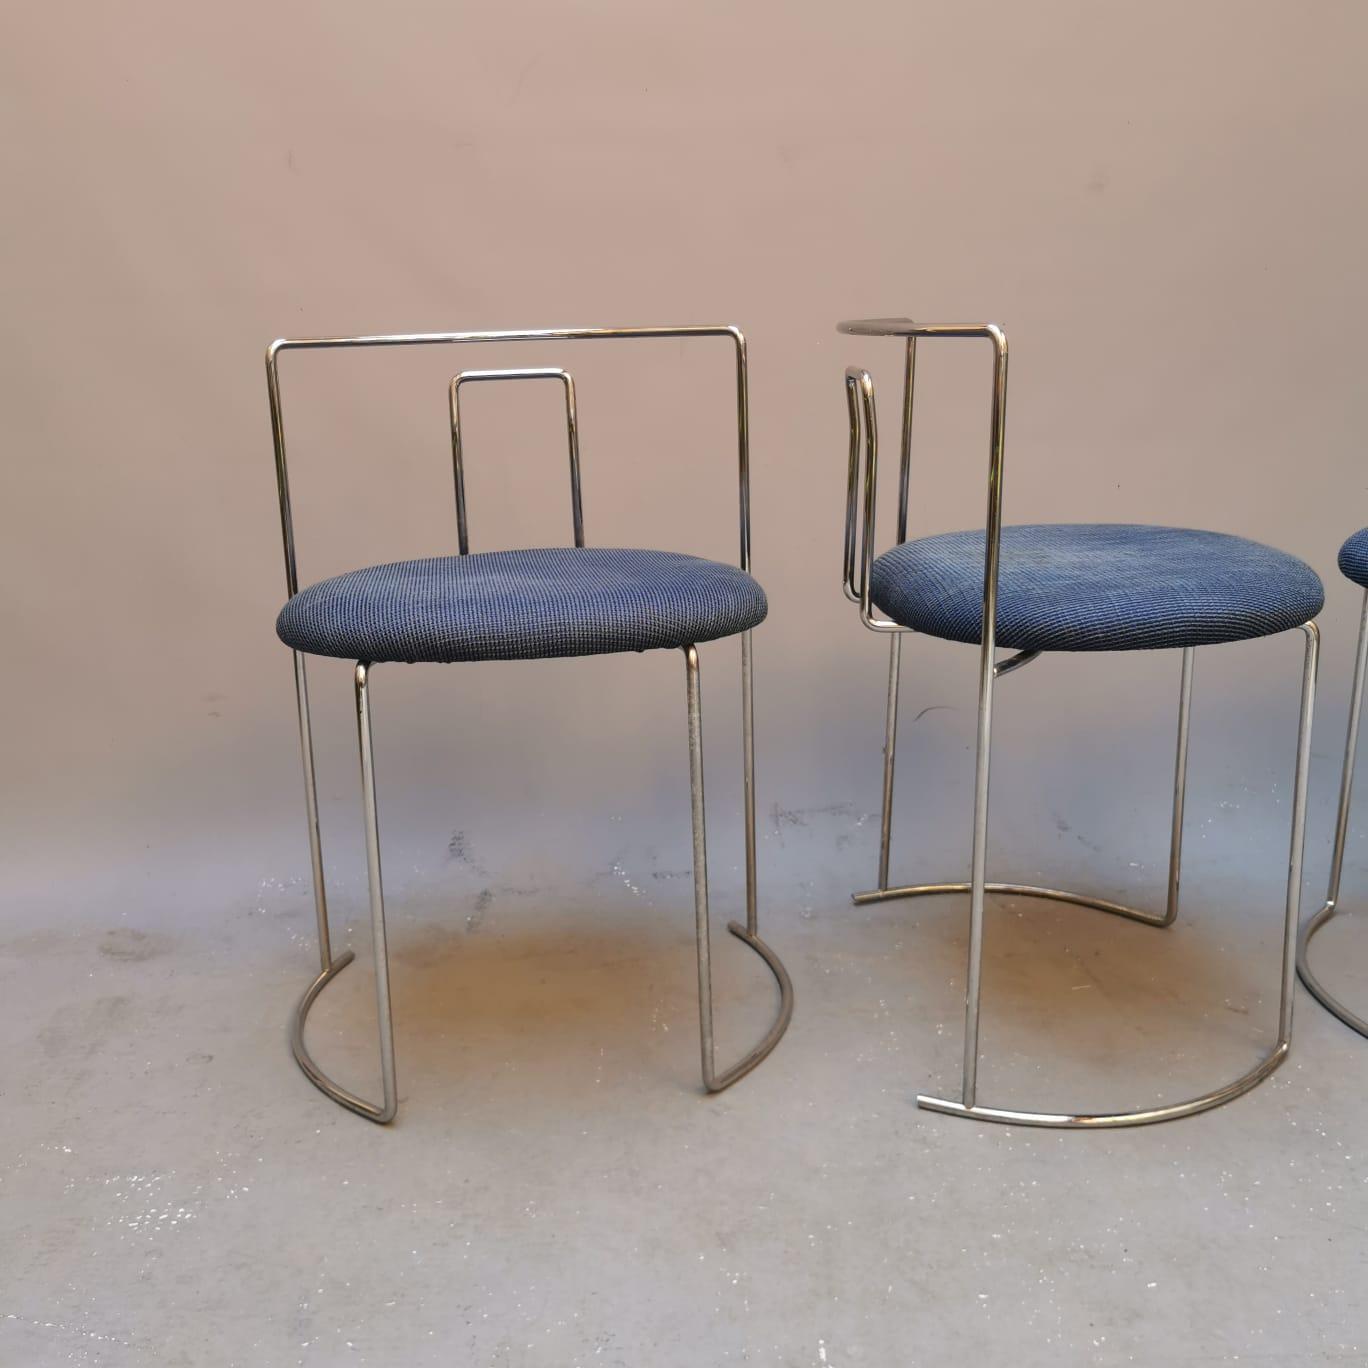 Italian Gaja Chairs, Kazuhide Takahama, Cassina